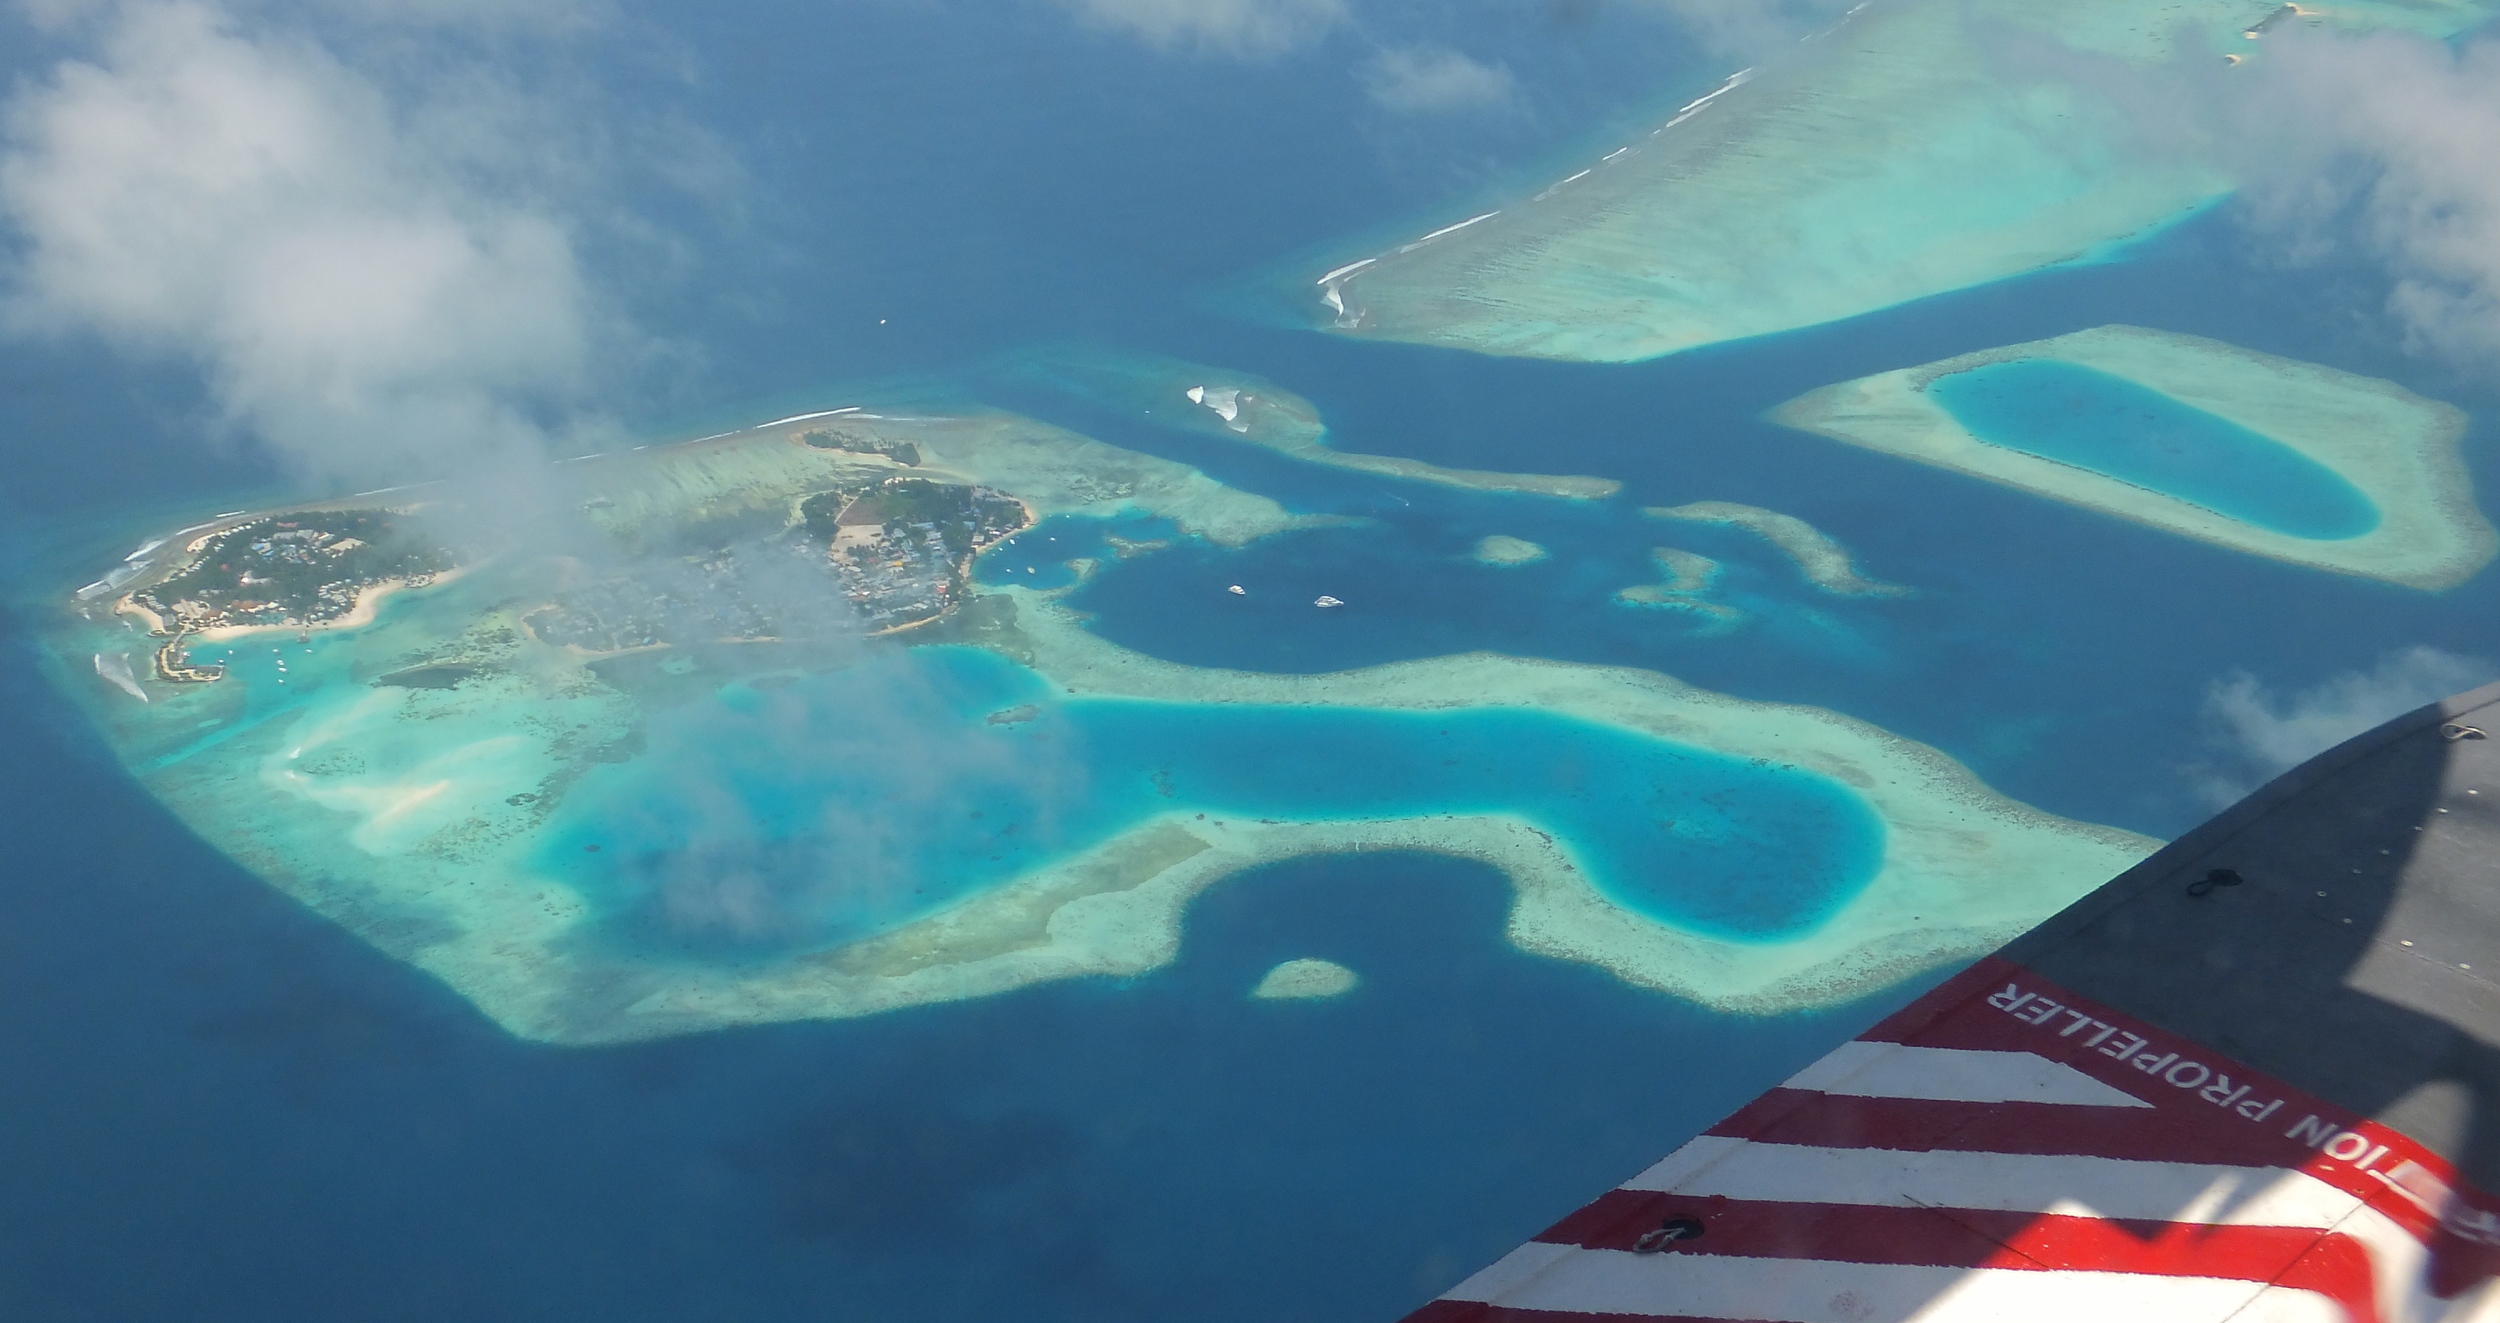 Sea Plane transfer in the Maldives